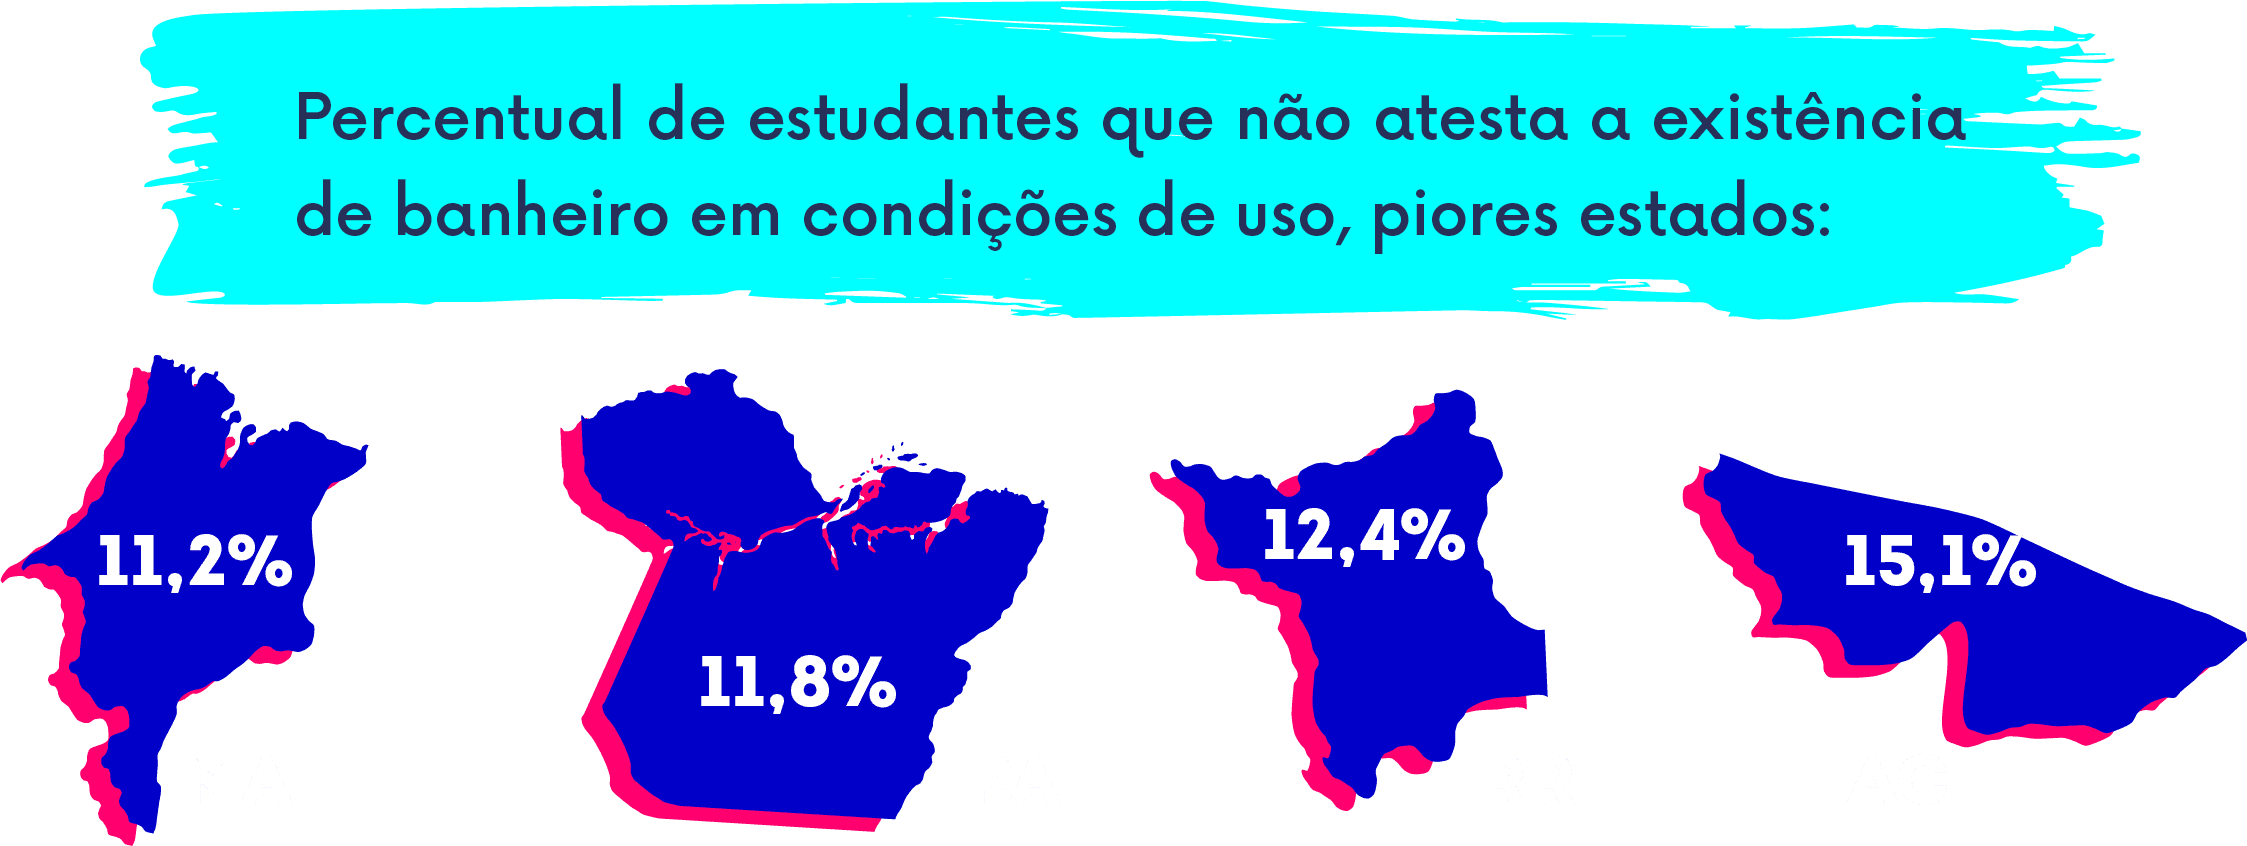 Em 4 estados o percentual de estudantes que não atesta a existência das devidas instalações ultrapassa 10%. São eles Maranhão (11,2%), Pará (11,8%), Roraima (12,4%) e Acre (15,1%). 